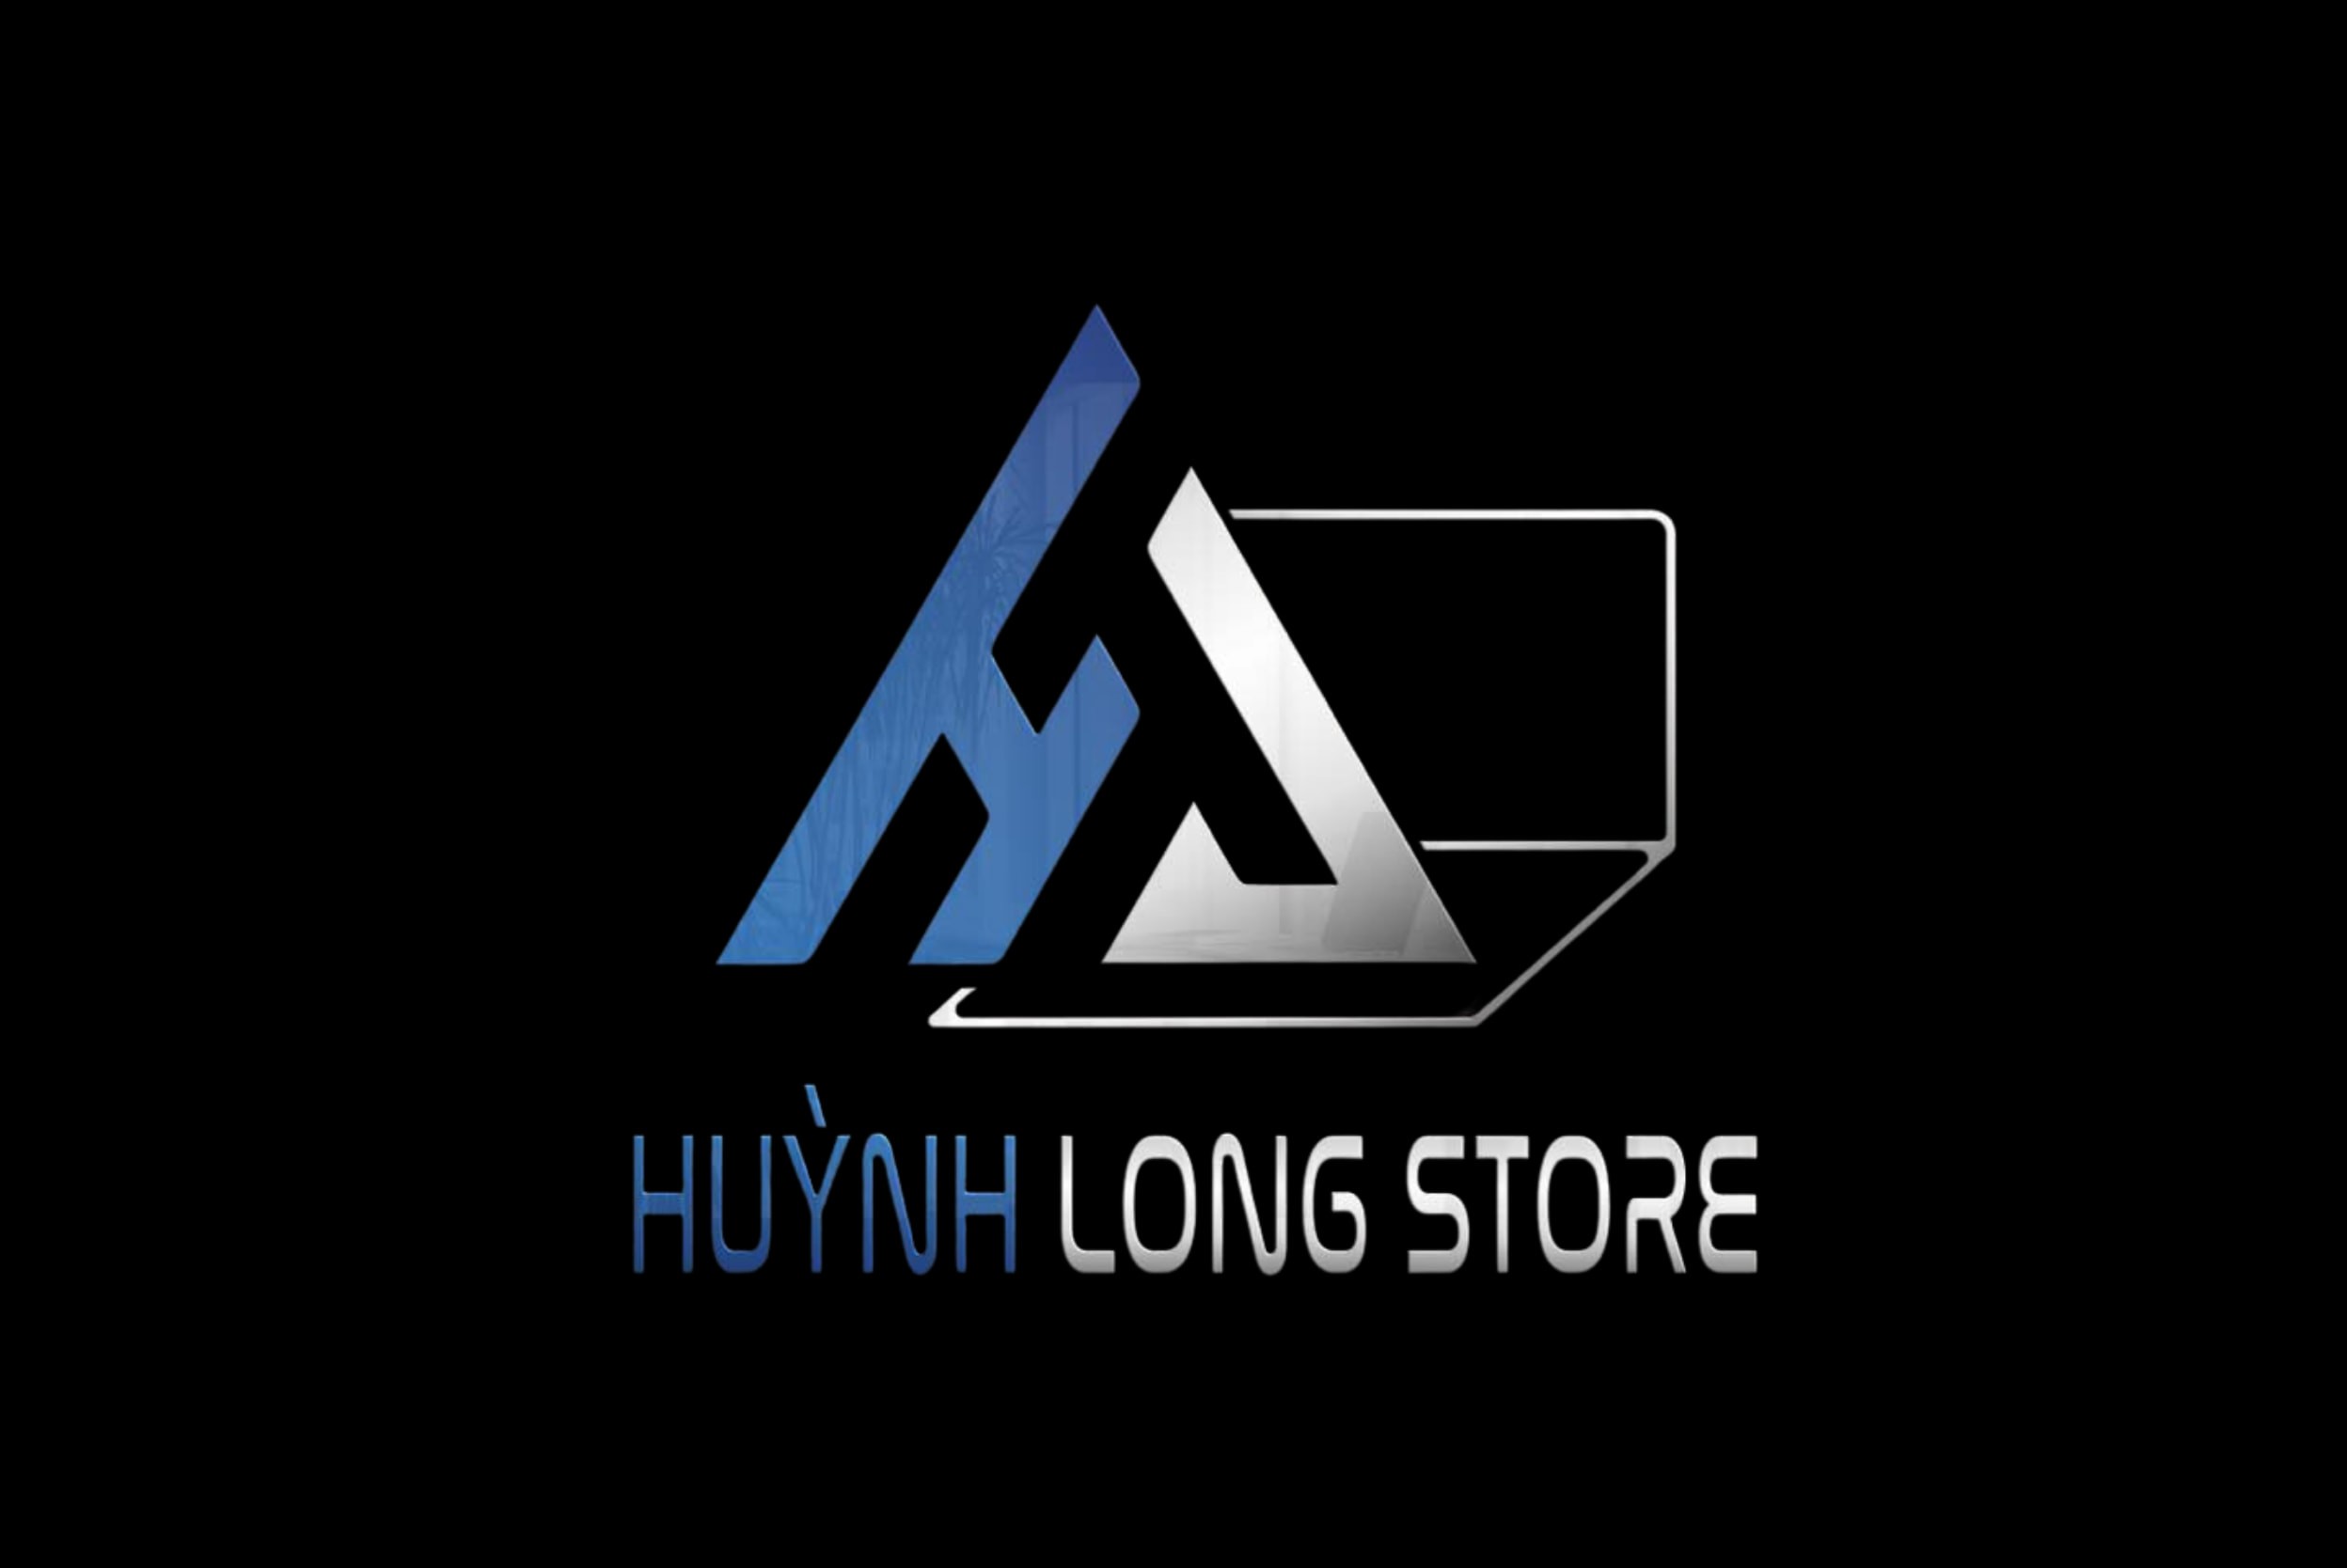 huynh-long-store-logo